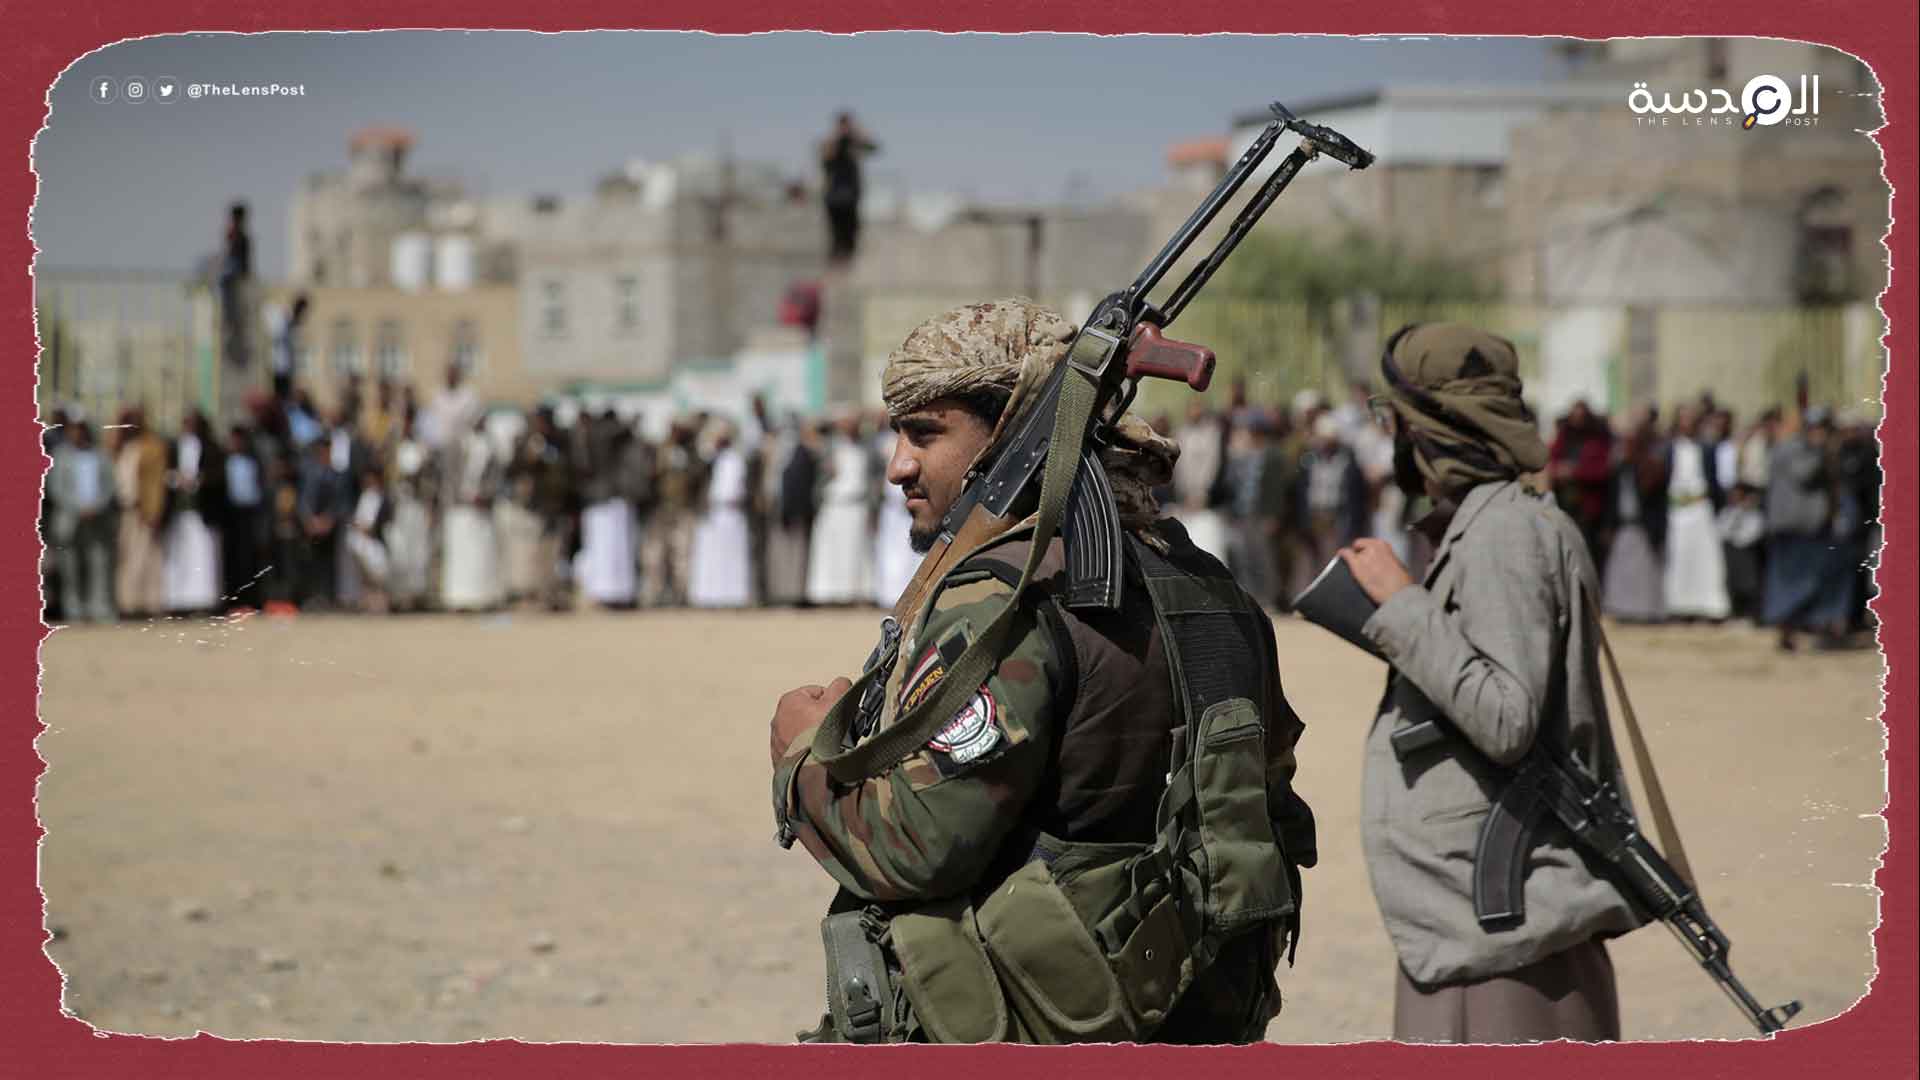 المخابرات الإماراتية تلتقي الحوثيين بمسقط وتتسبب في غضب سعودي